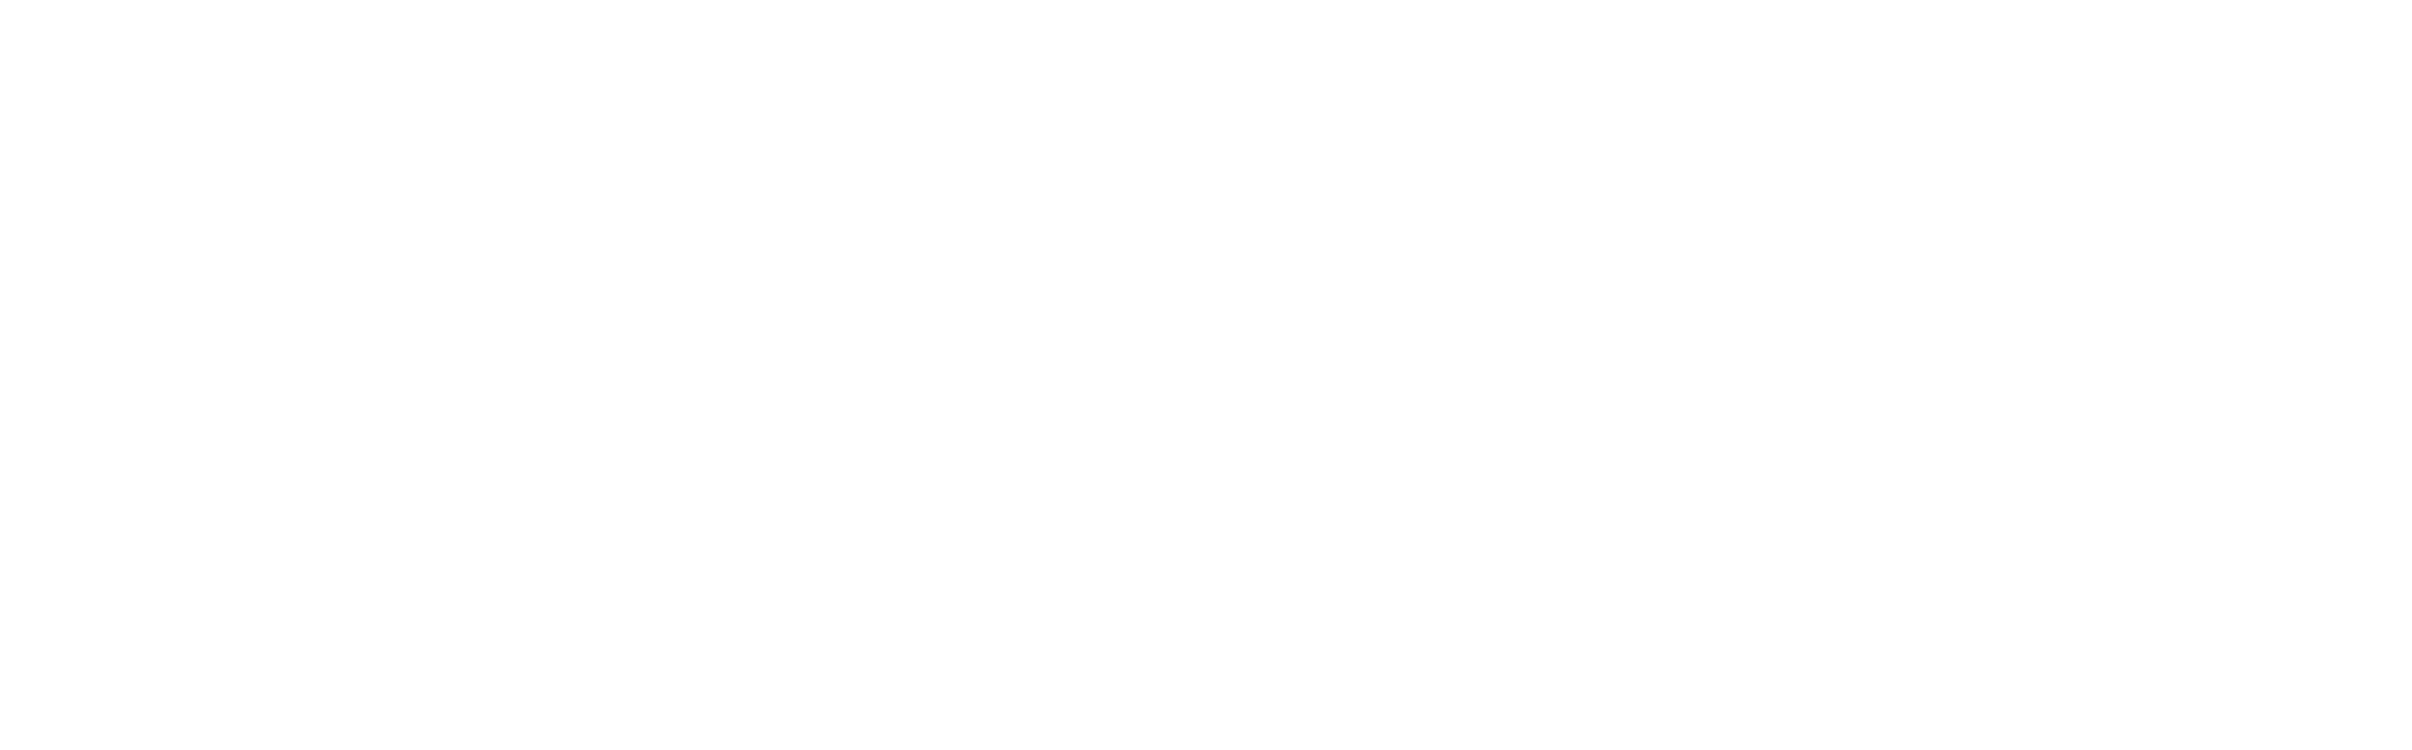 Cometik Deutschland Logo weiß